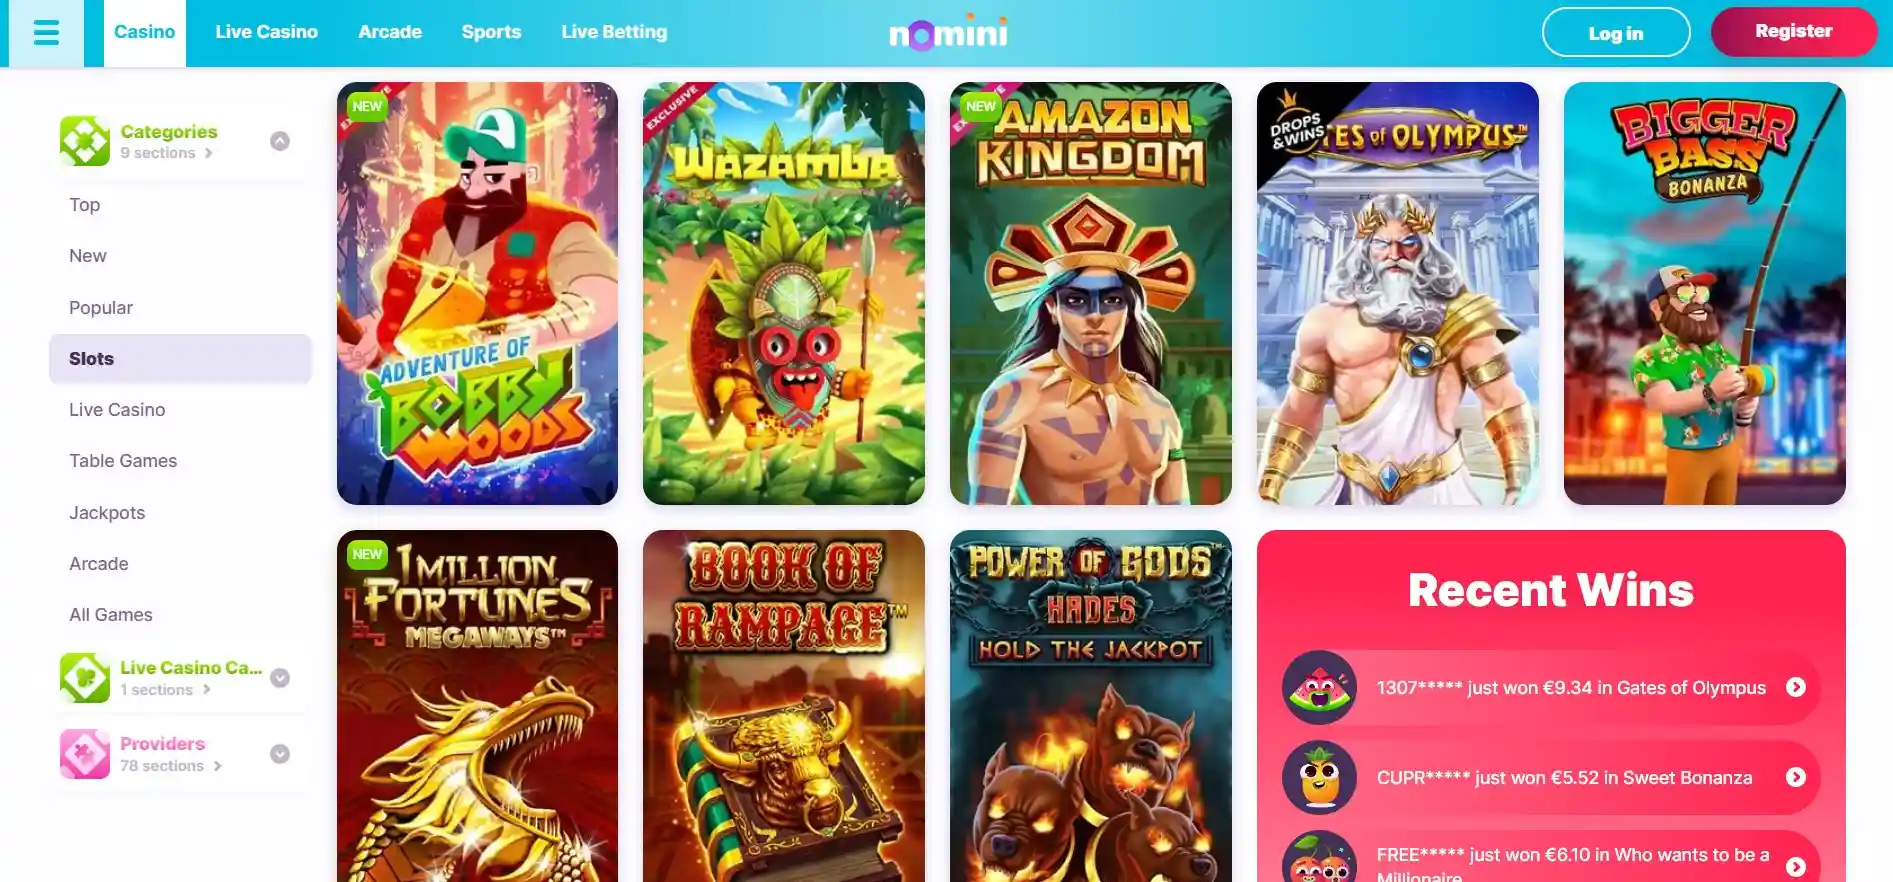 Nomini casino online slots